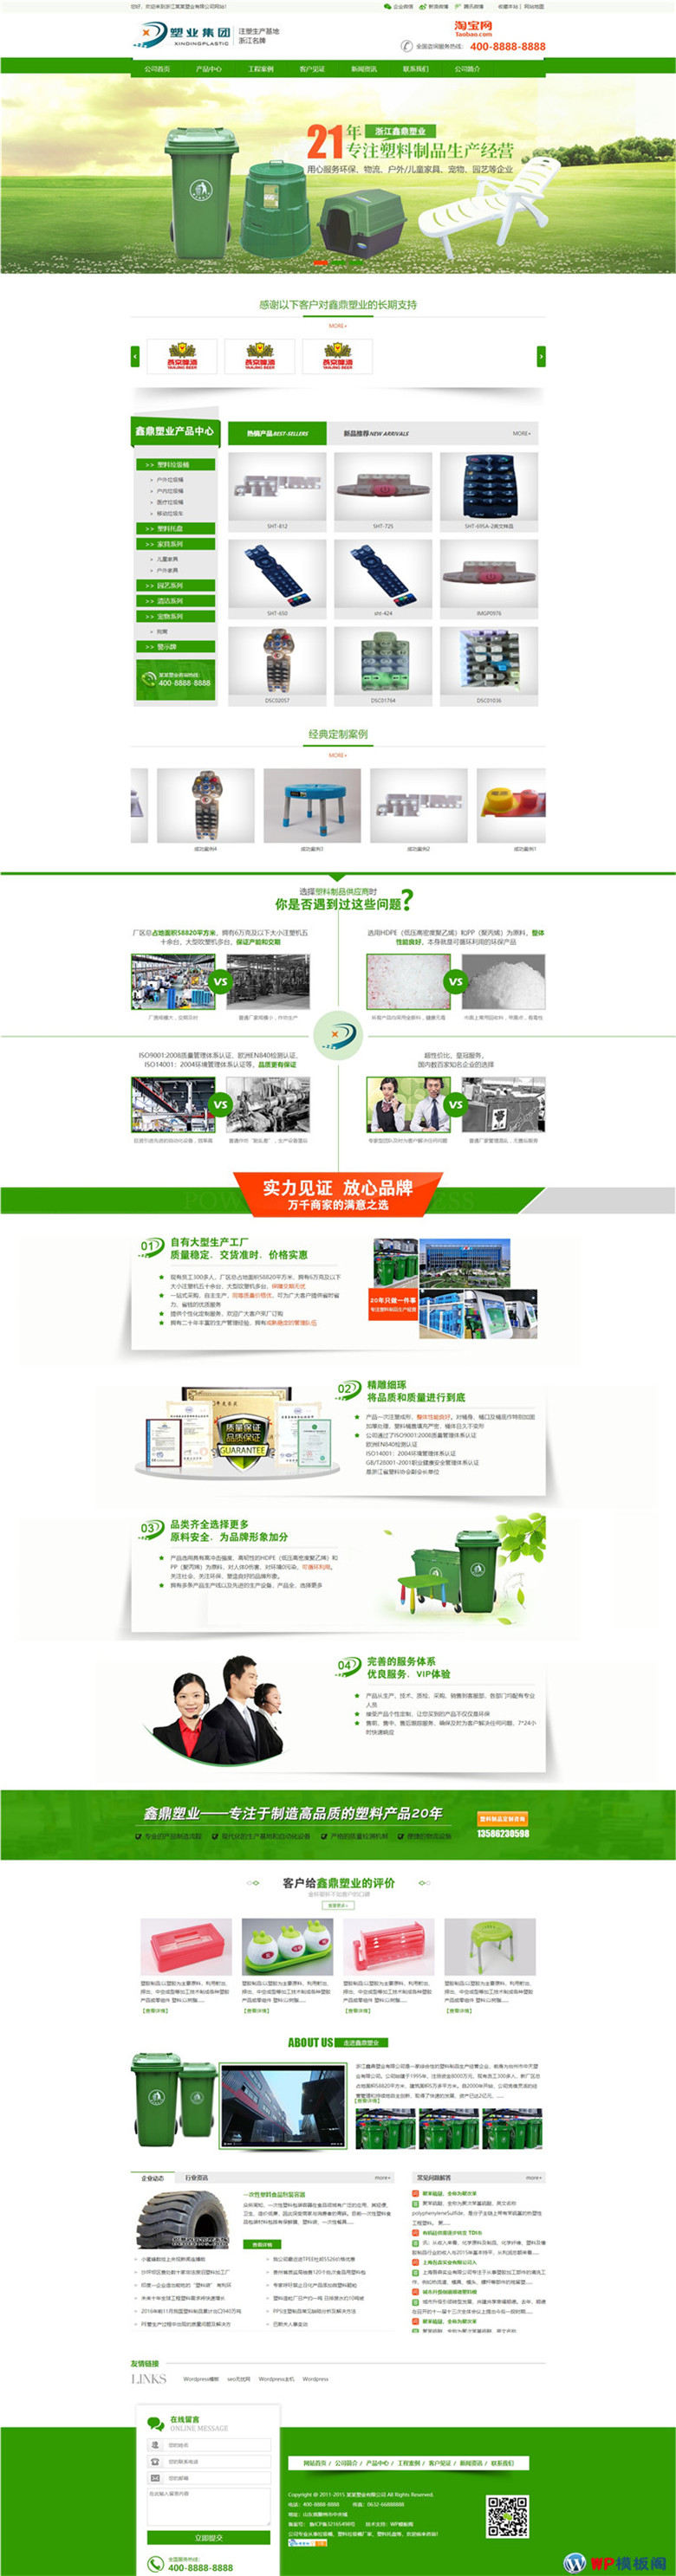 绿色营销型塑料制品垃圾箱等环保塑胶产品升级版网站制作_网站建设模板演示图